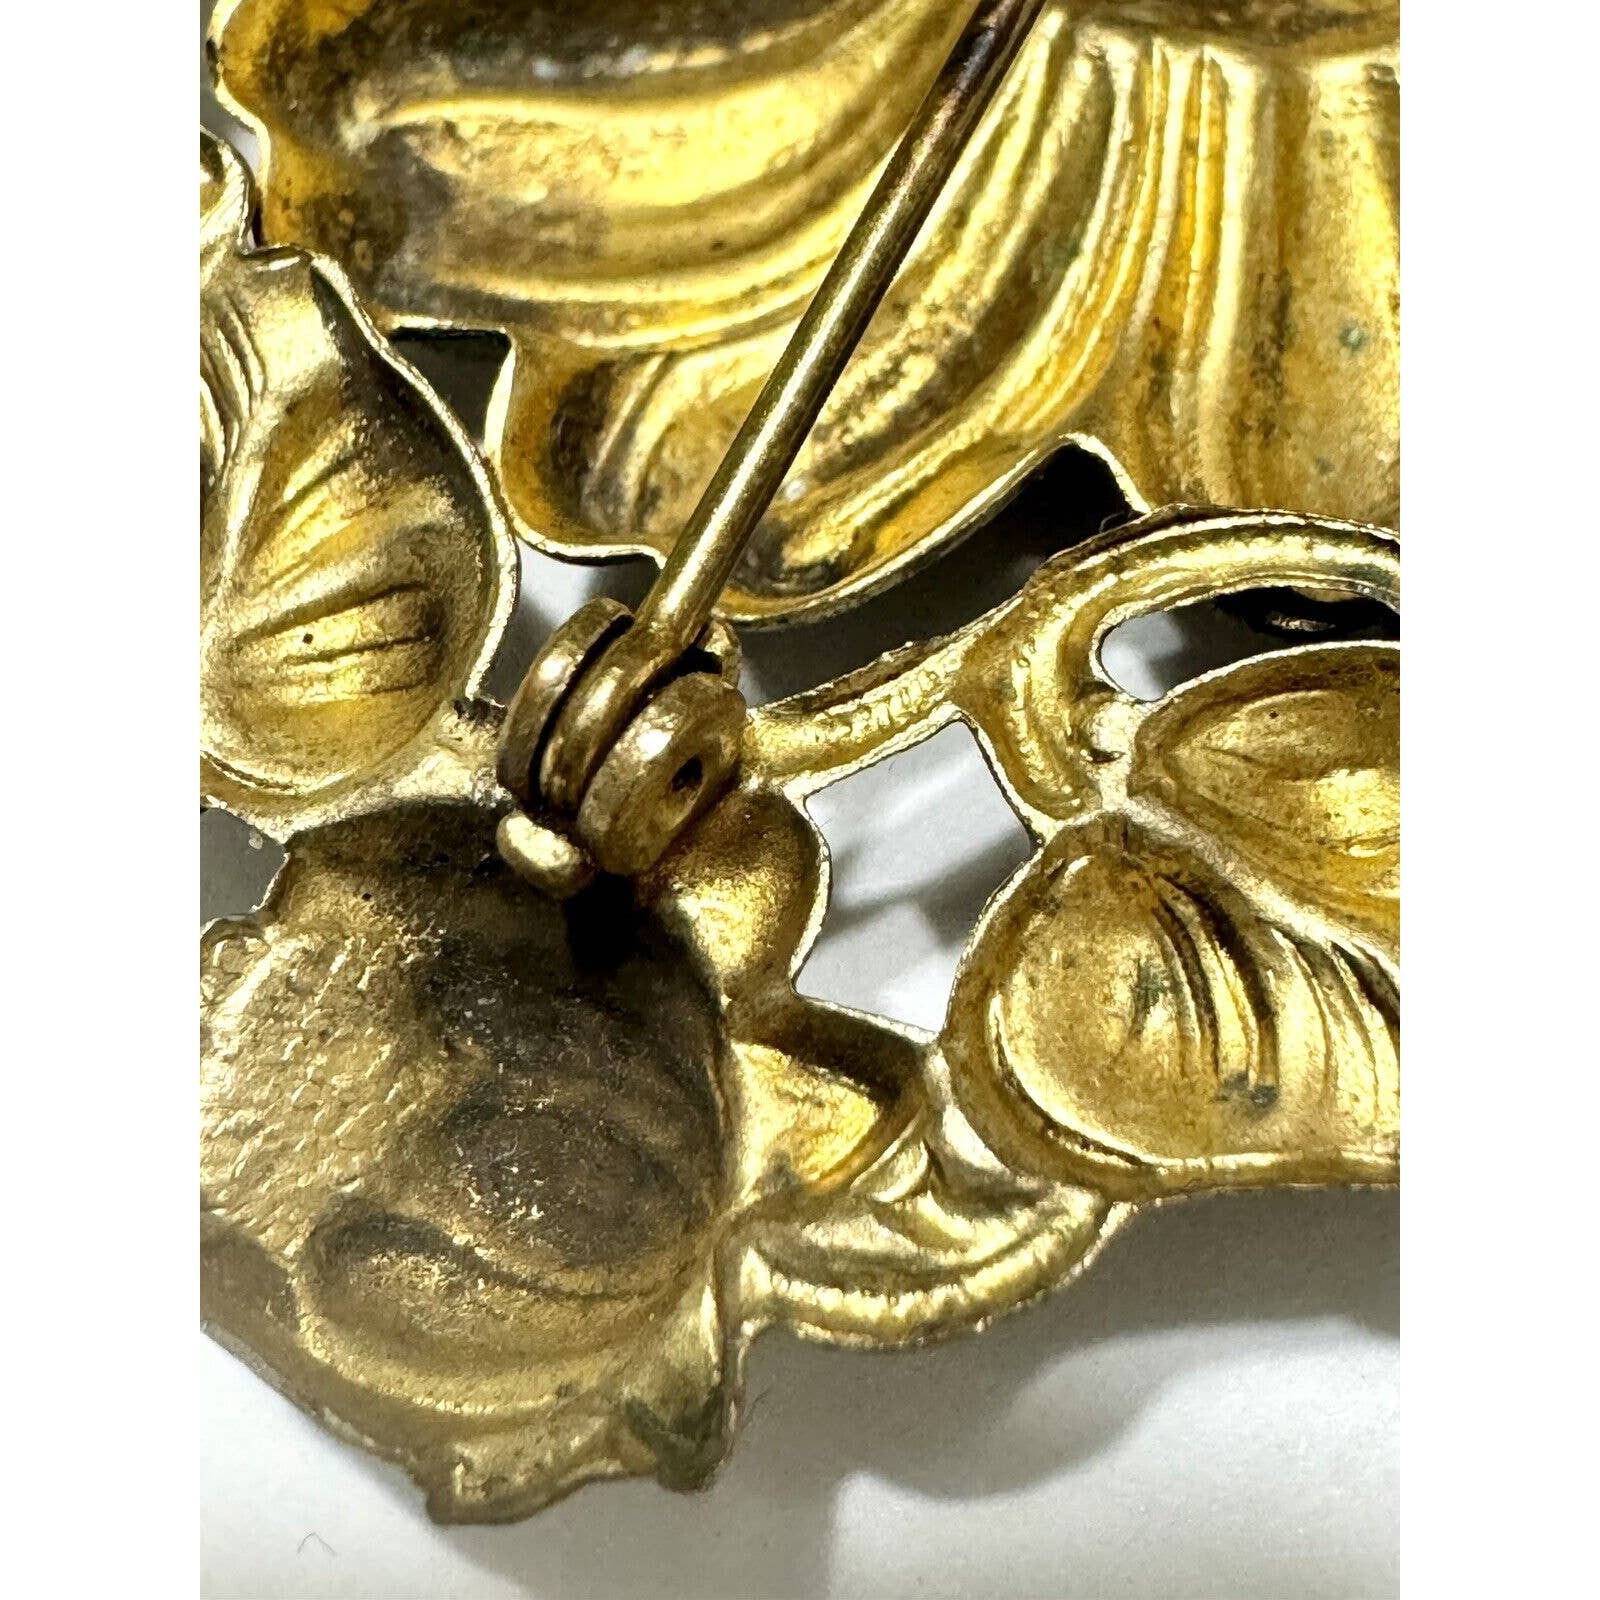 UnbrandedAntique Vintage Art Nouveau Brass Repousse Floral Tiered Brooch - C Clasp - Black Dog Vintage